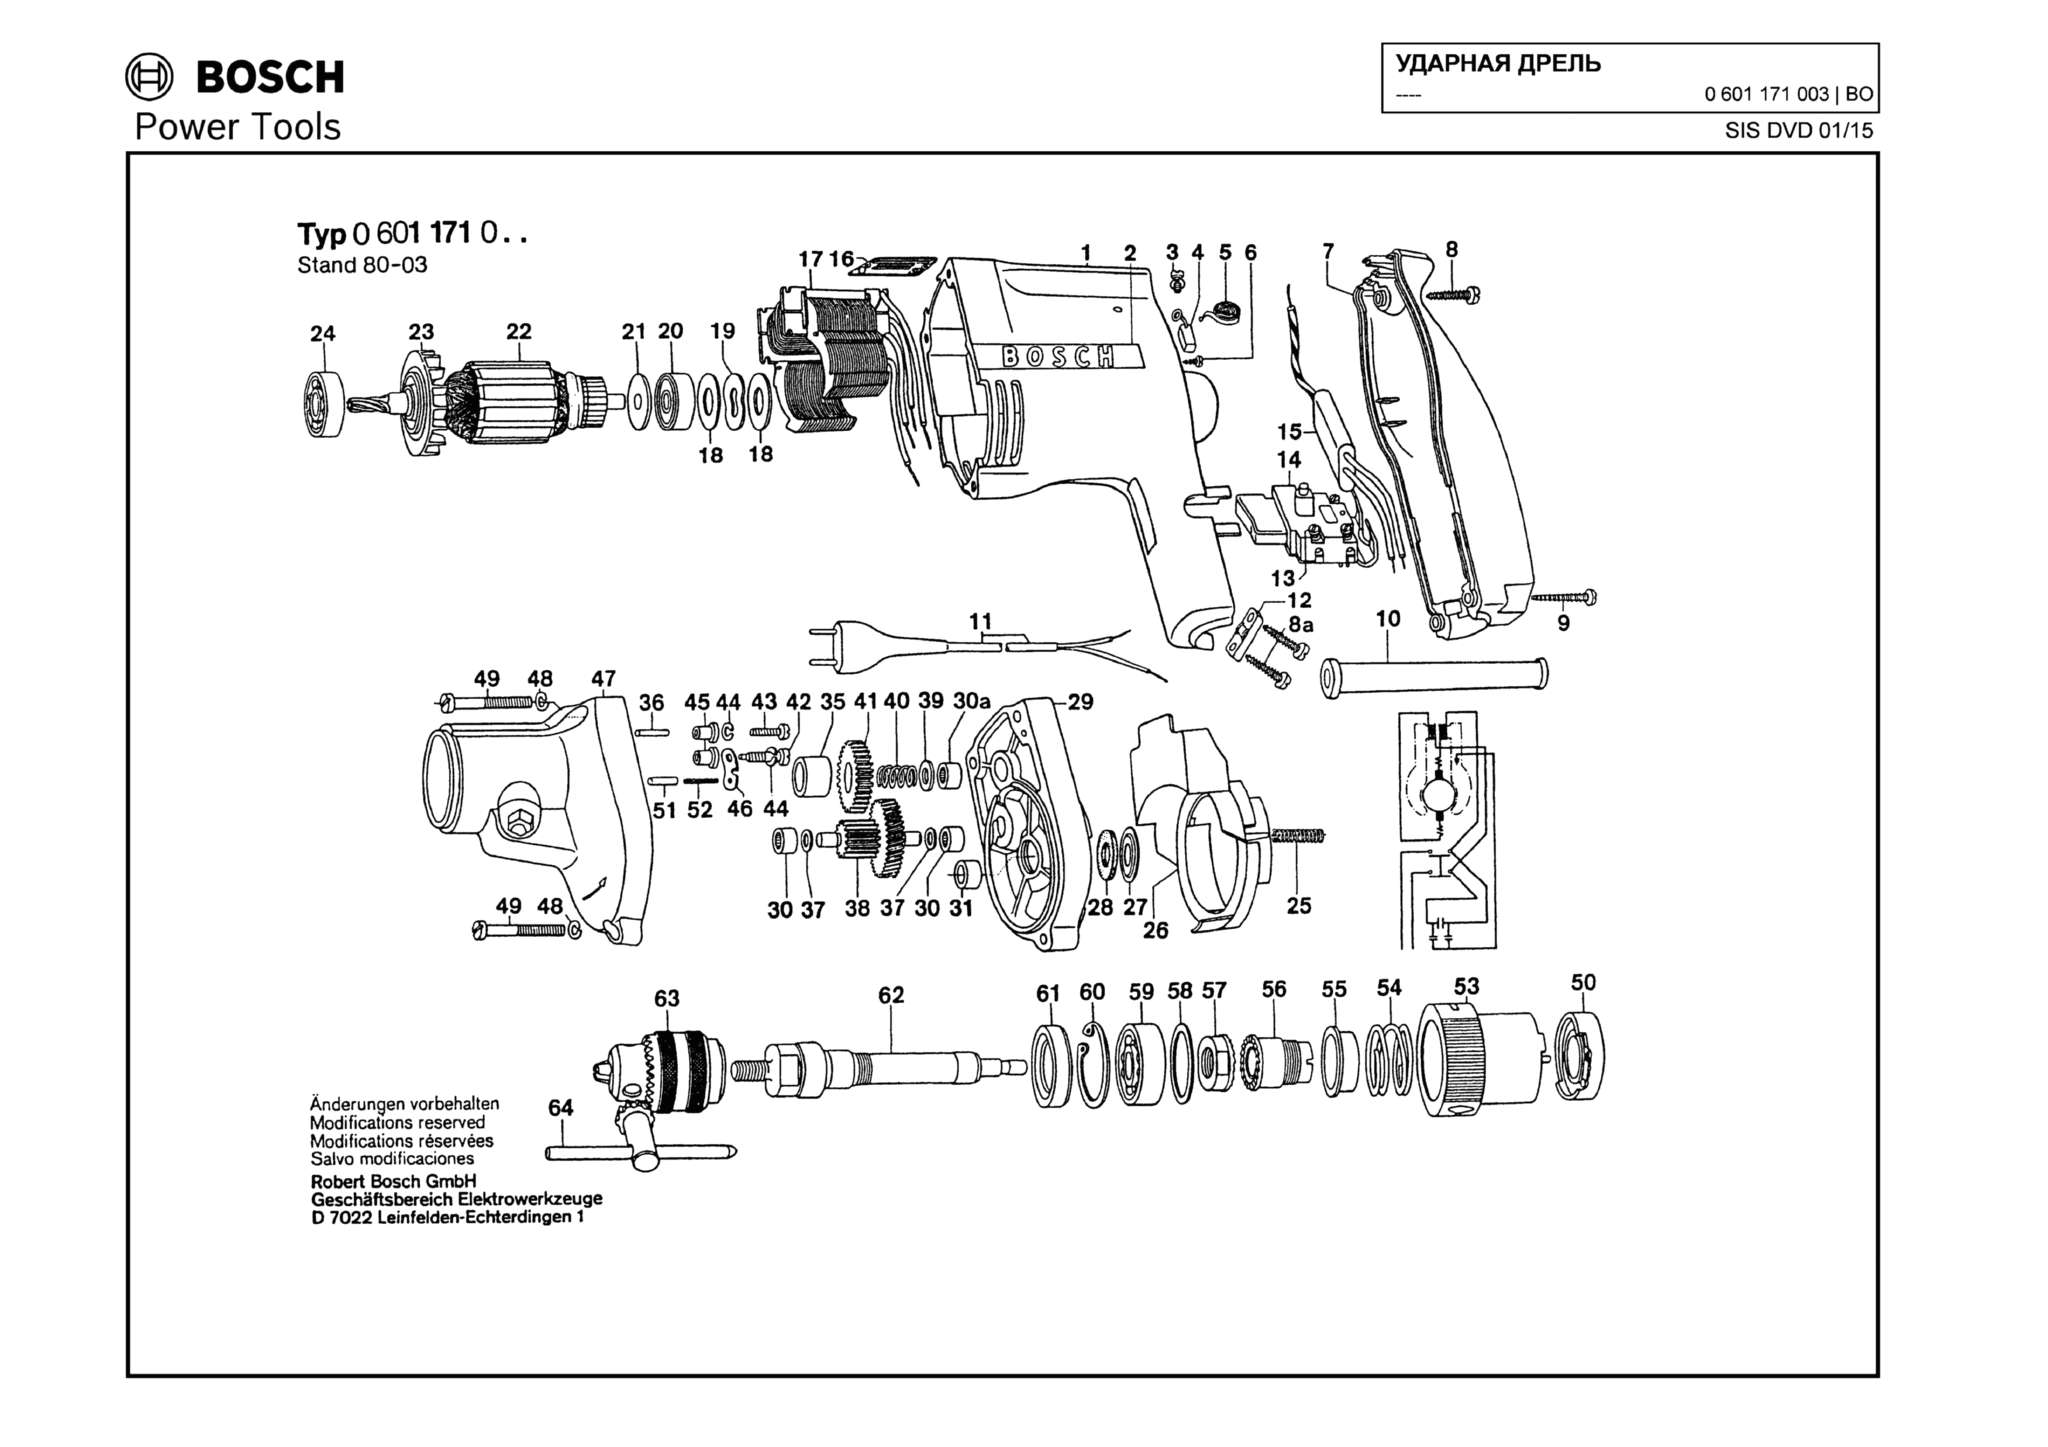 Запчасти, схема и деталировка Bosch (ТИП 0601171003)